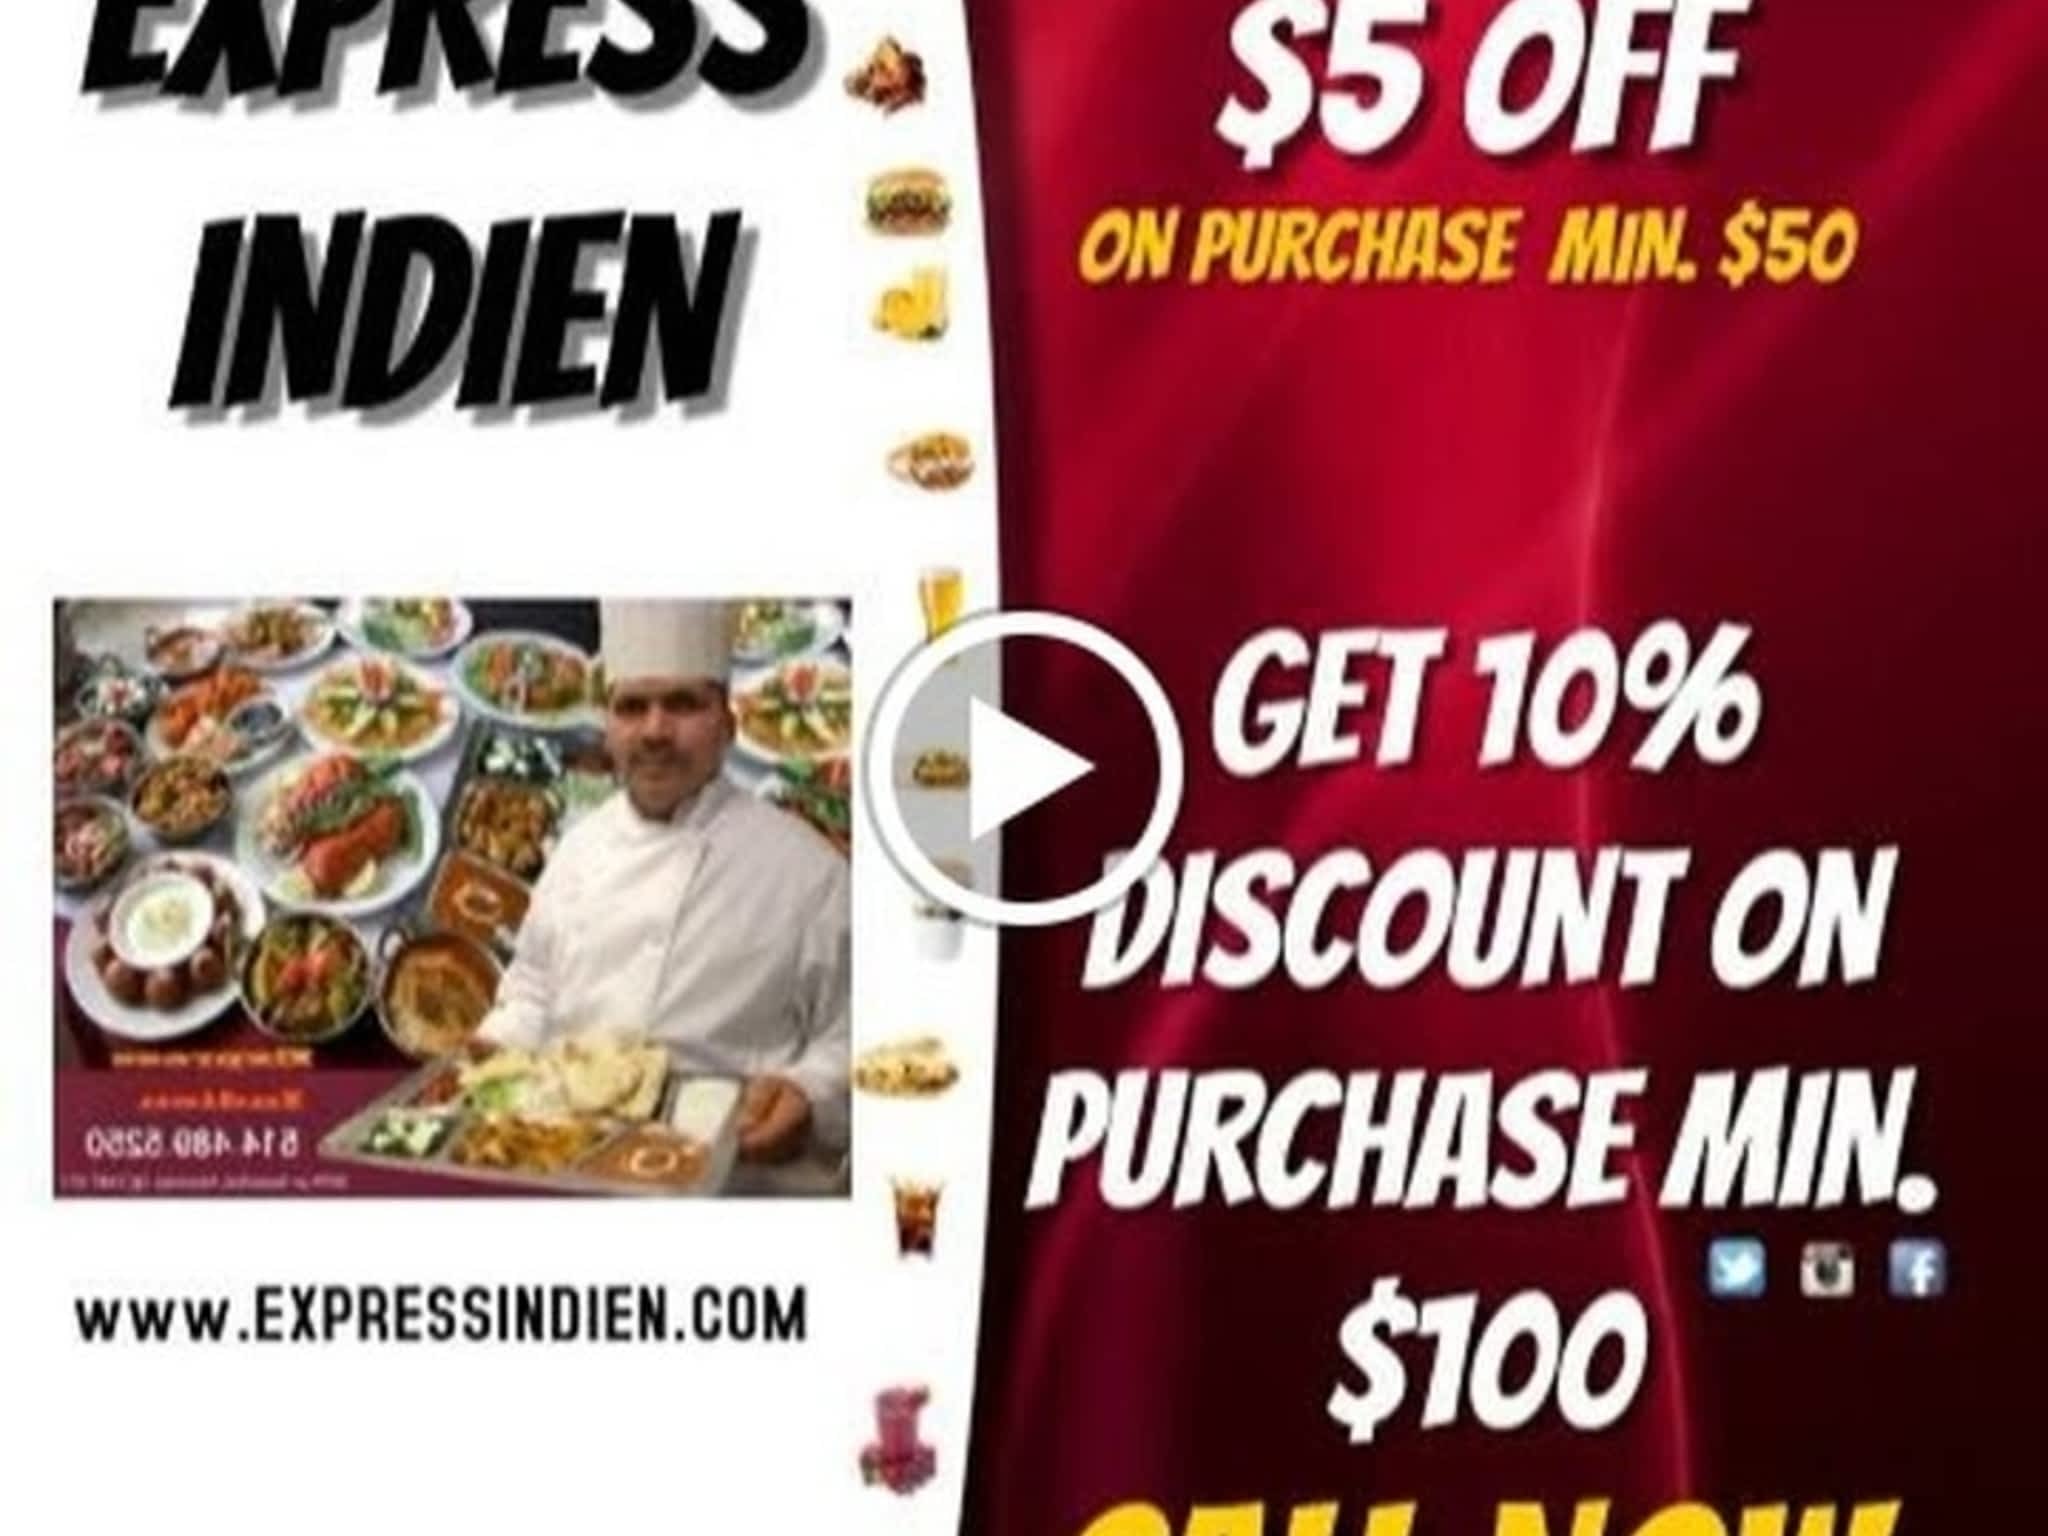 photo Express Indien Restaurant